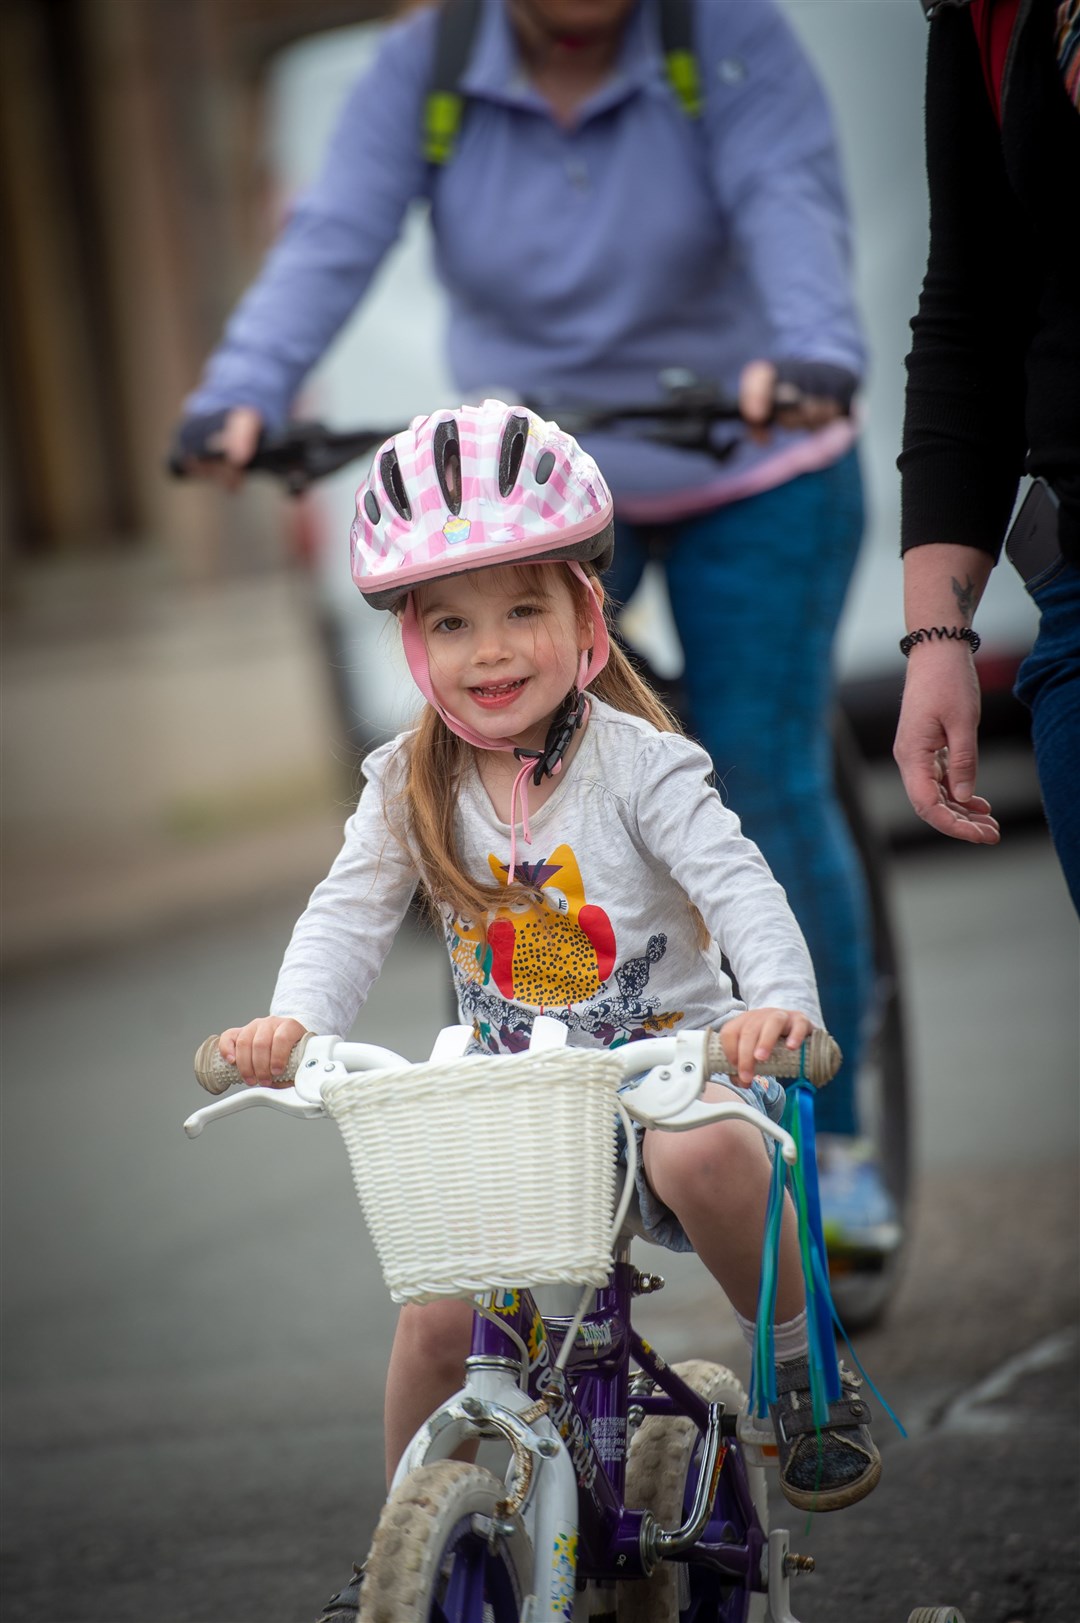 A happy bike rider! Picture: Callum Mackay